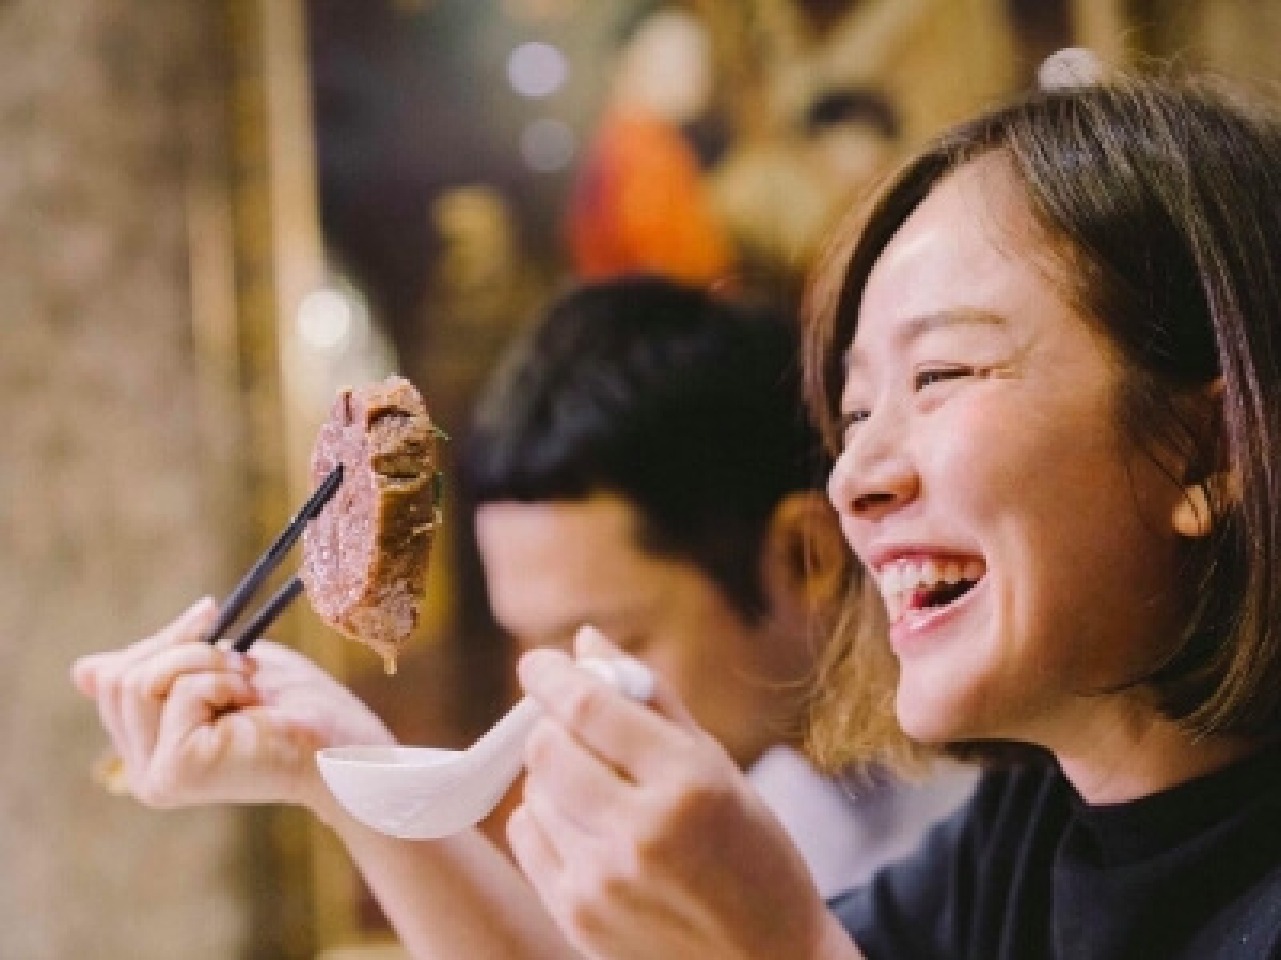 超級美食家 專訪 吳贊浩老闆
談調味、選料的用心做菜方式